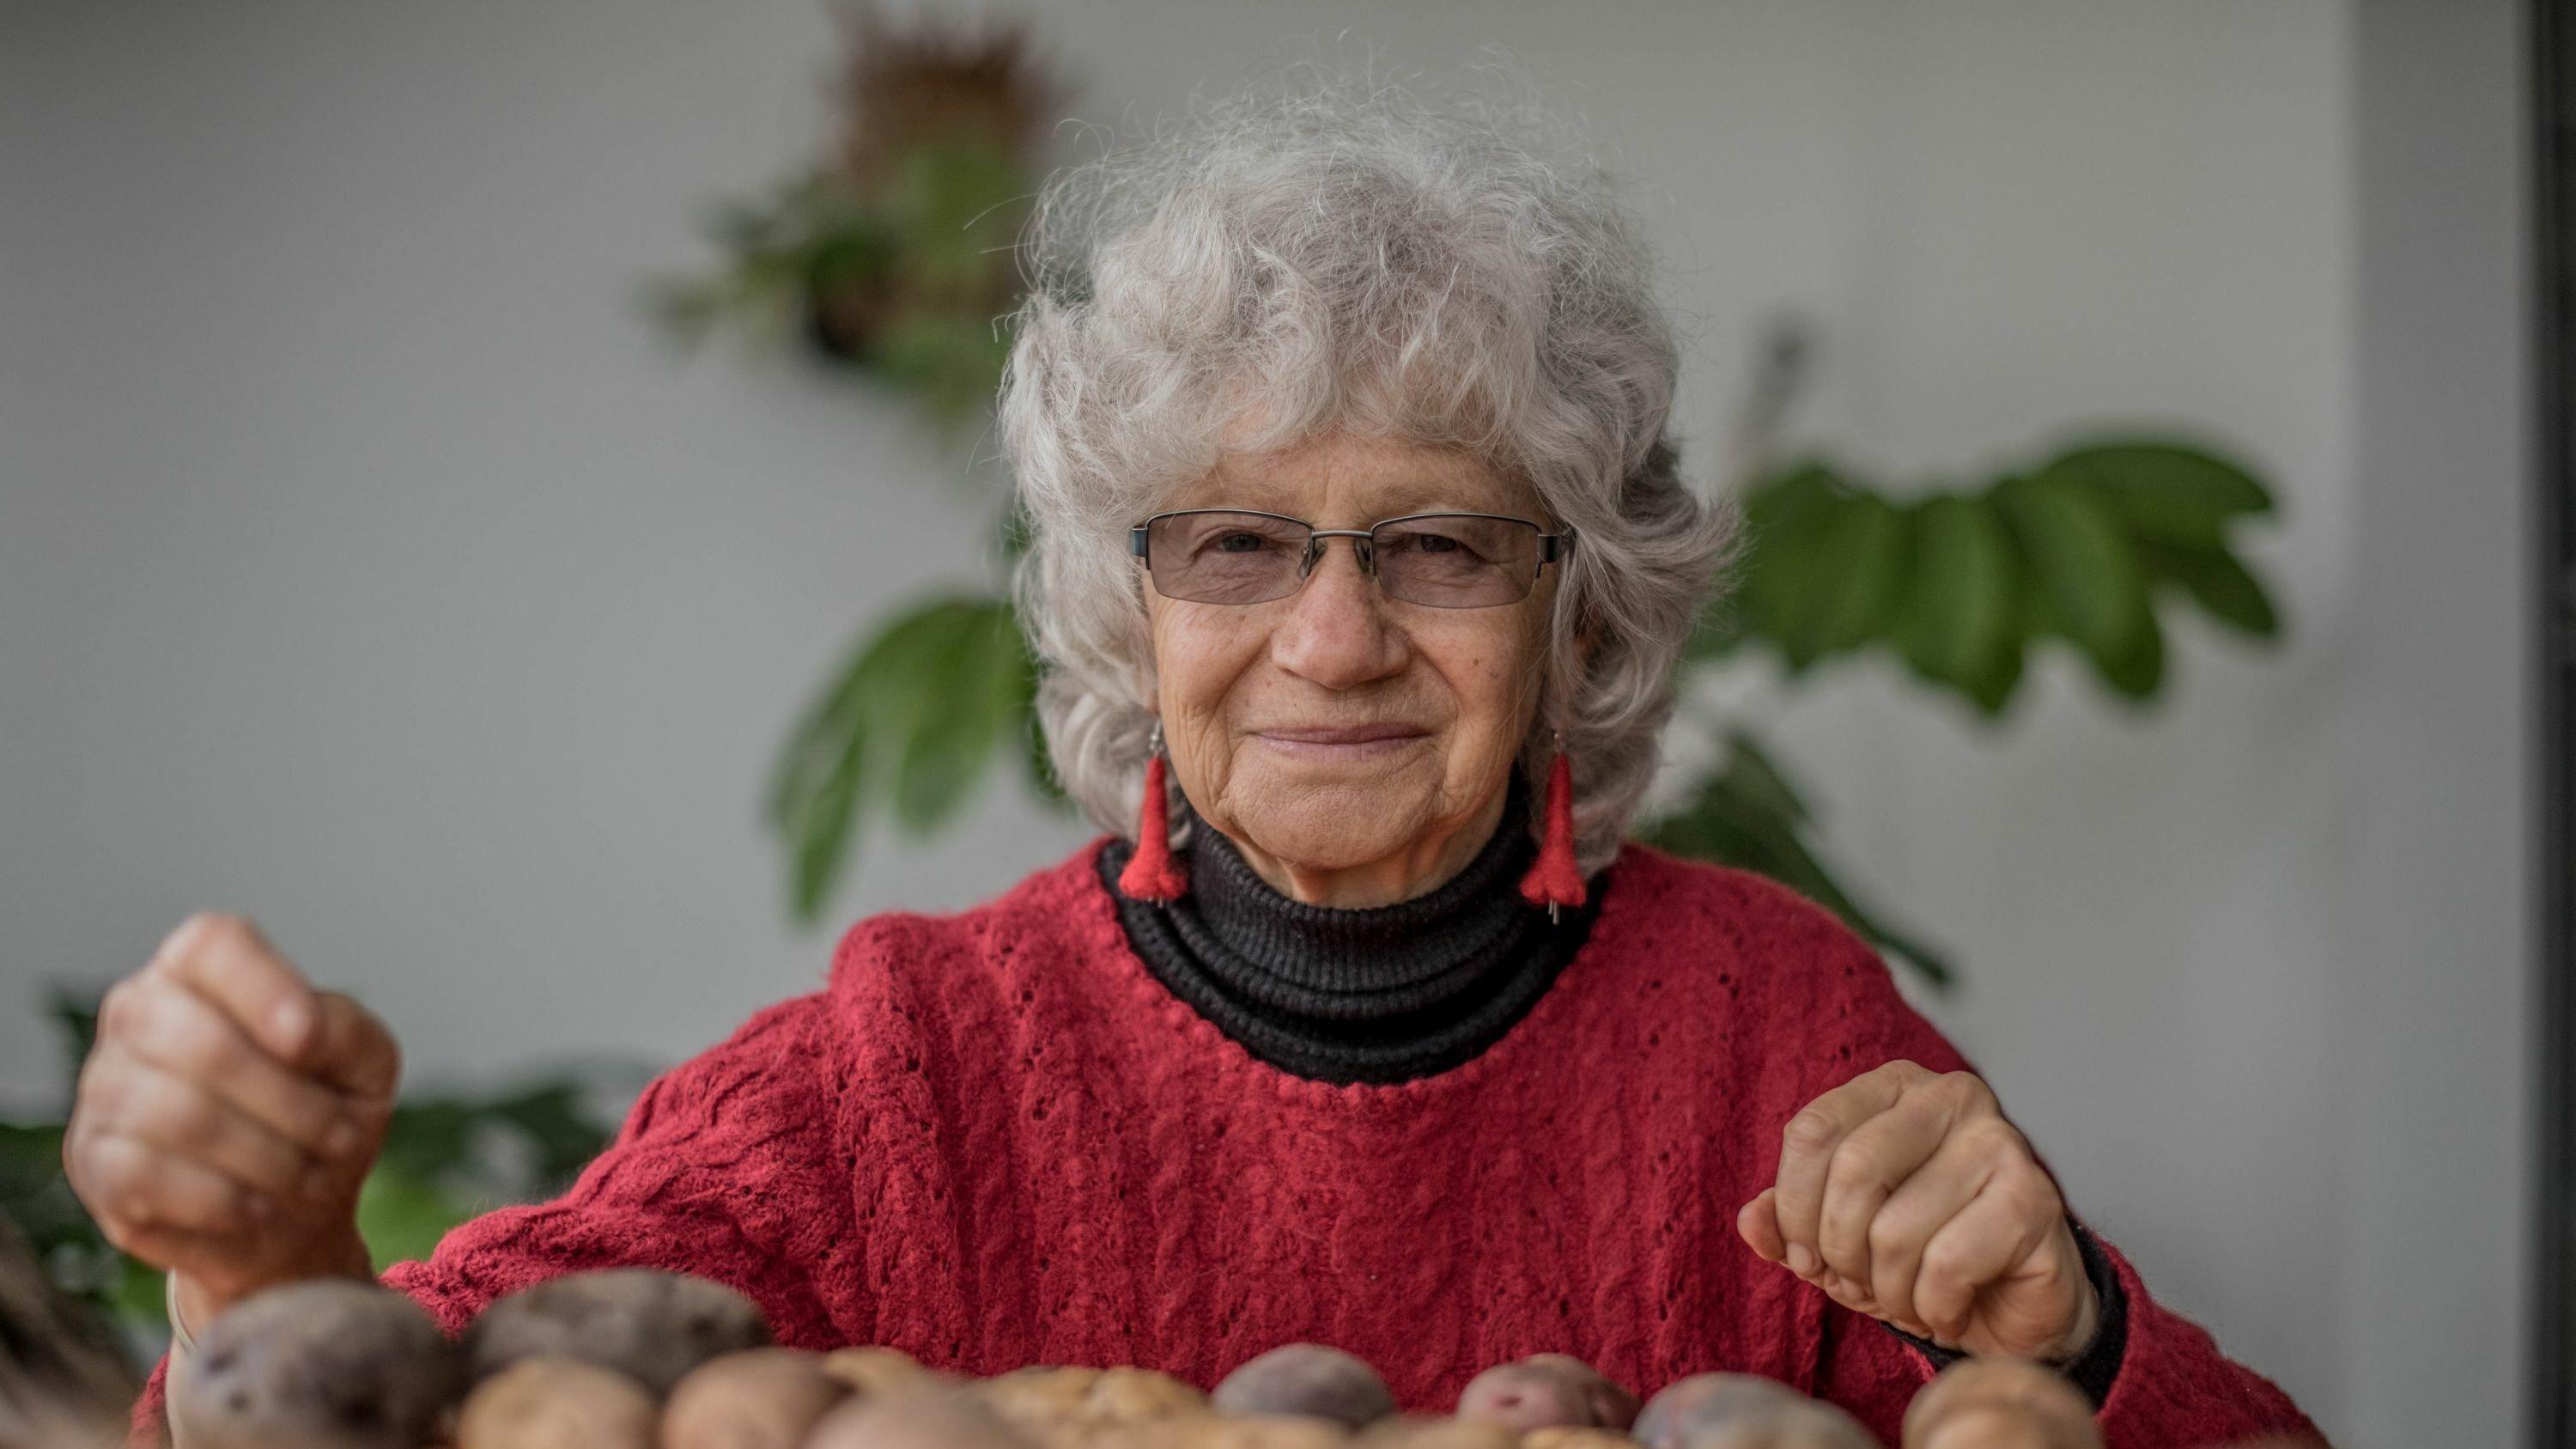 Weißhaarige Frau mit runzligem Gesicht und rotem langärmligen Pullover blickt in die Kamera, vor sich auf dem Tisch liegen mehrere Kartoffeln.